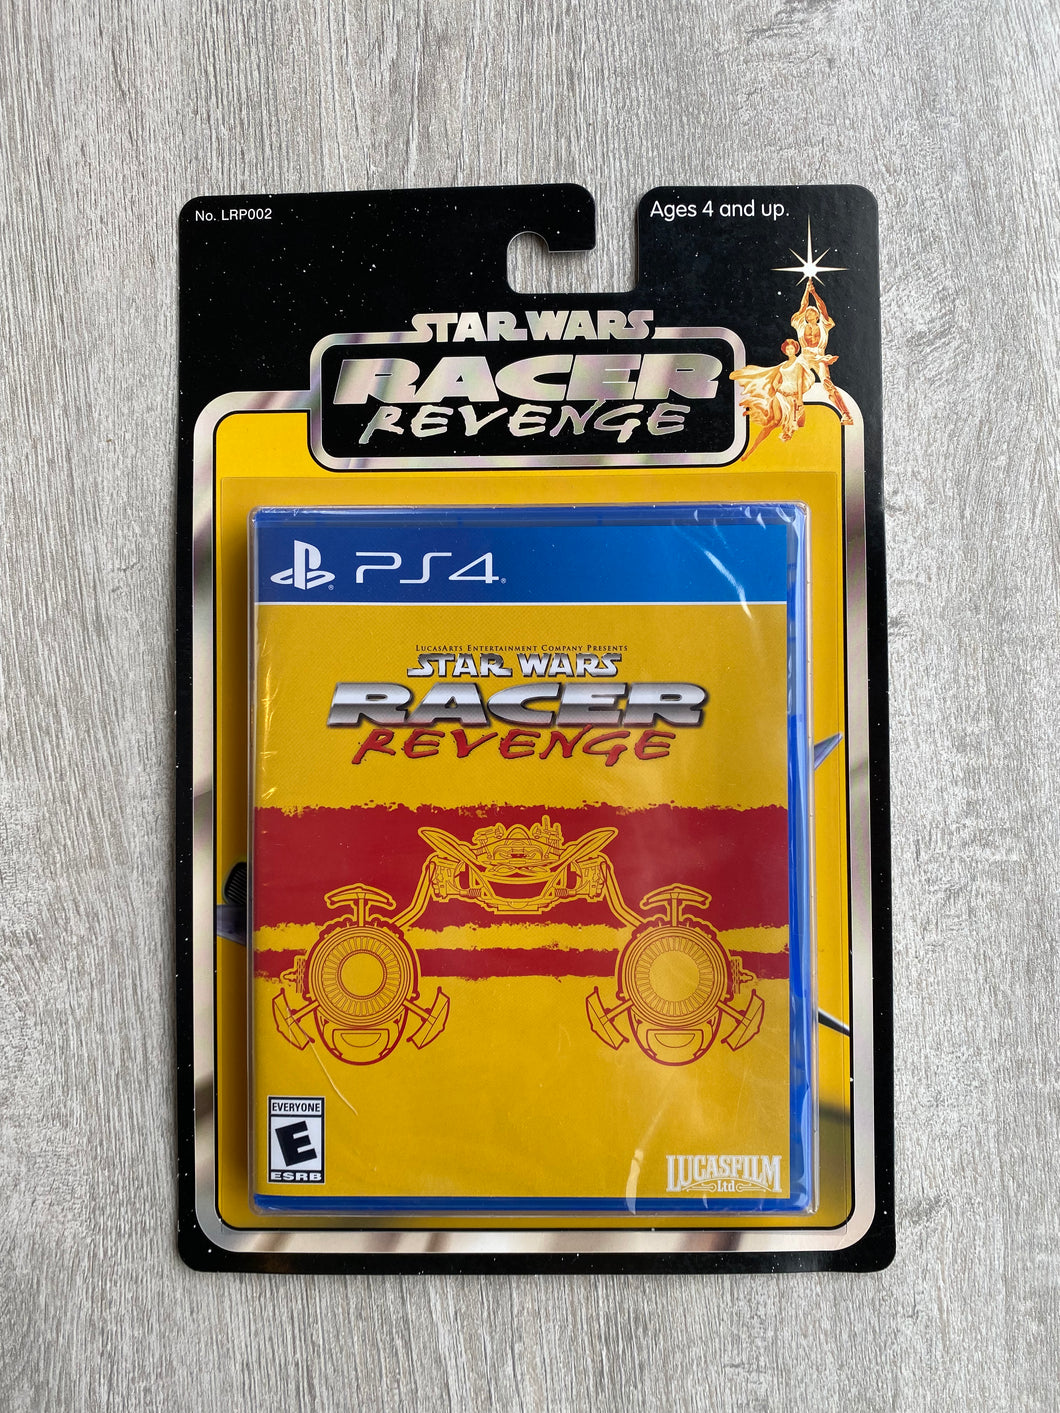 Star wars Racer revenge / Limited run games / PS4